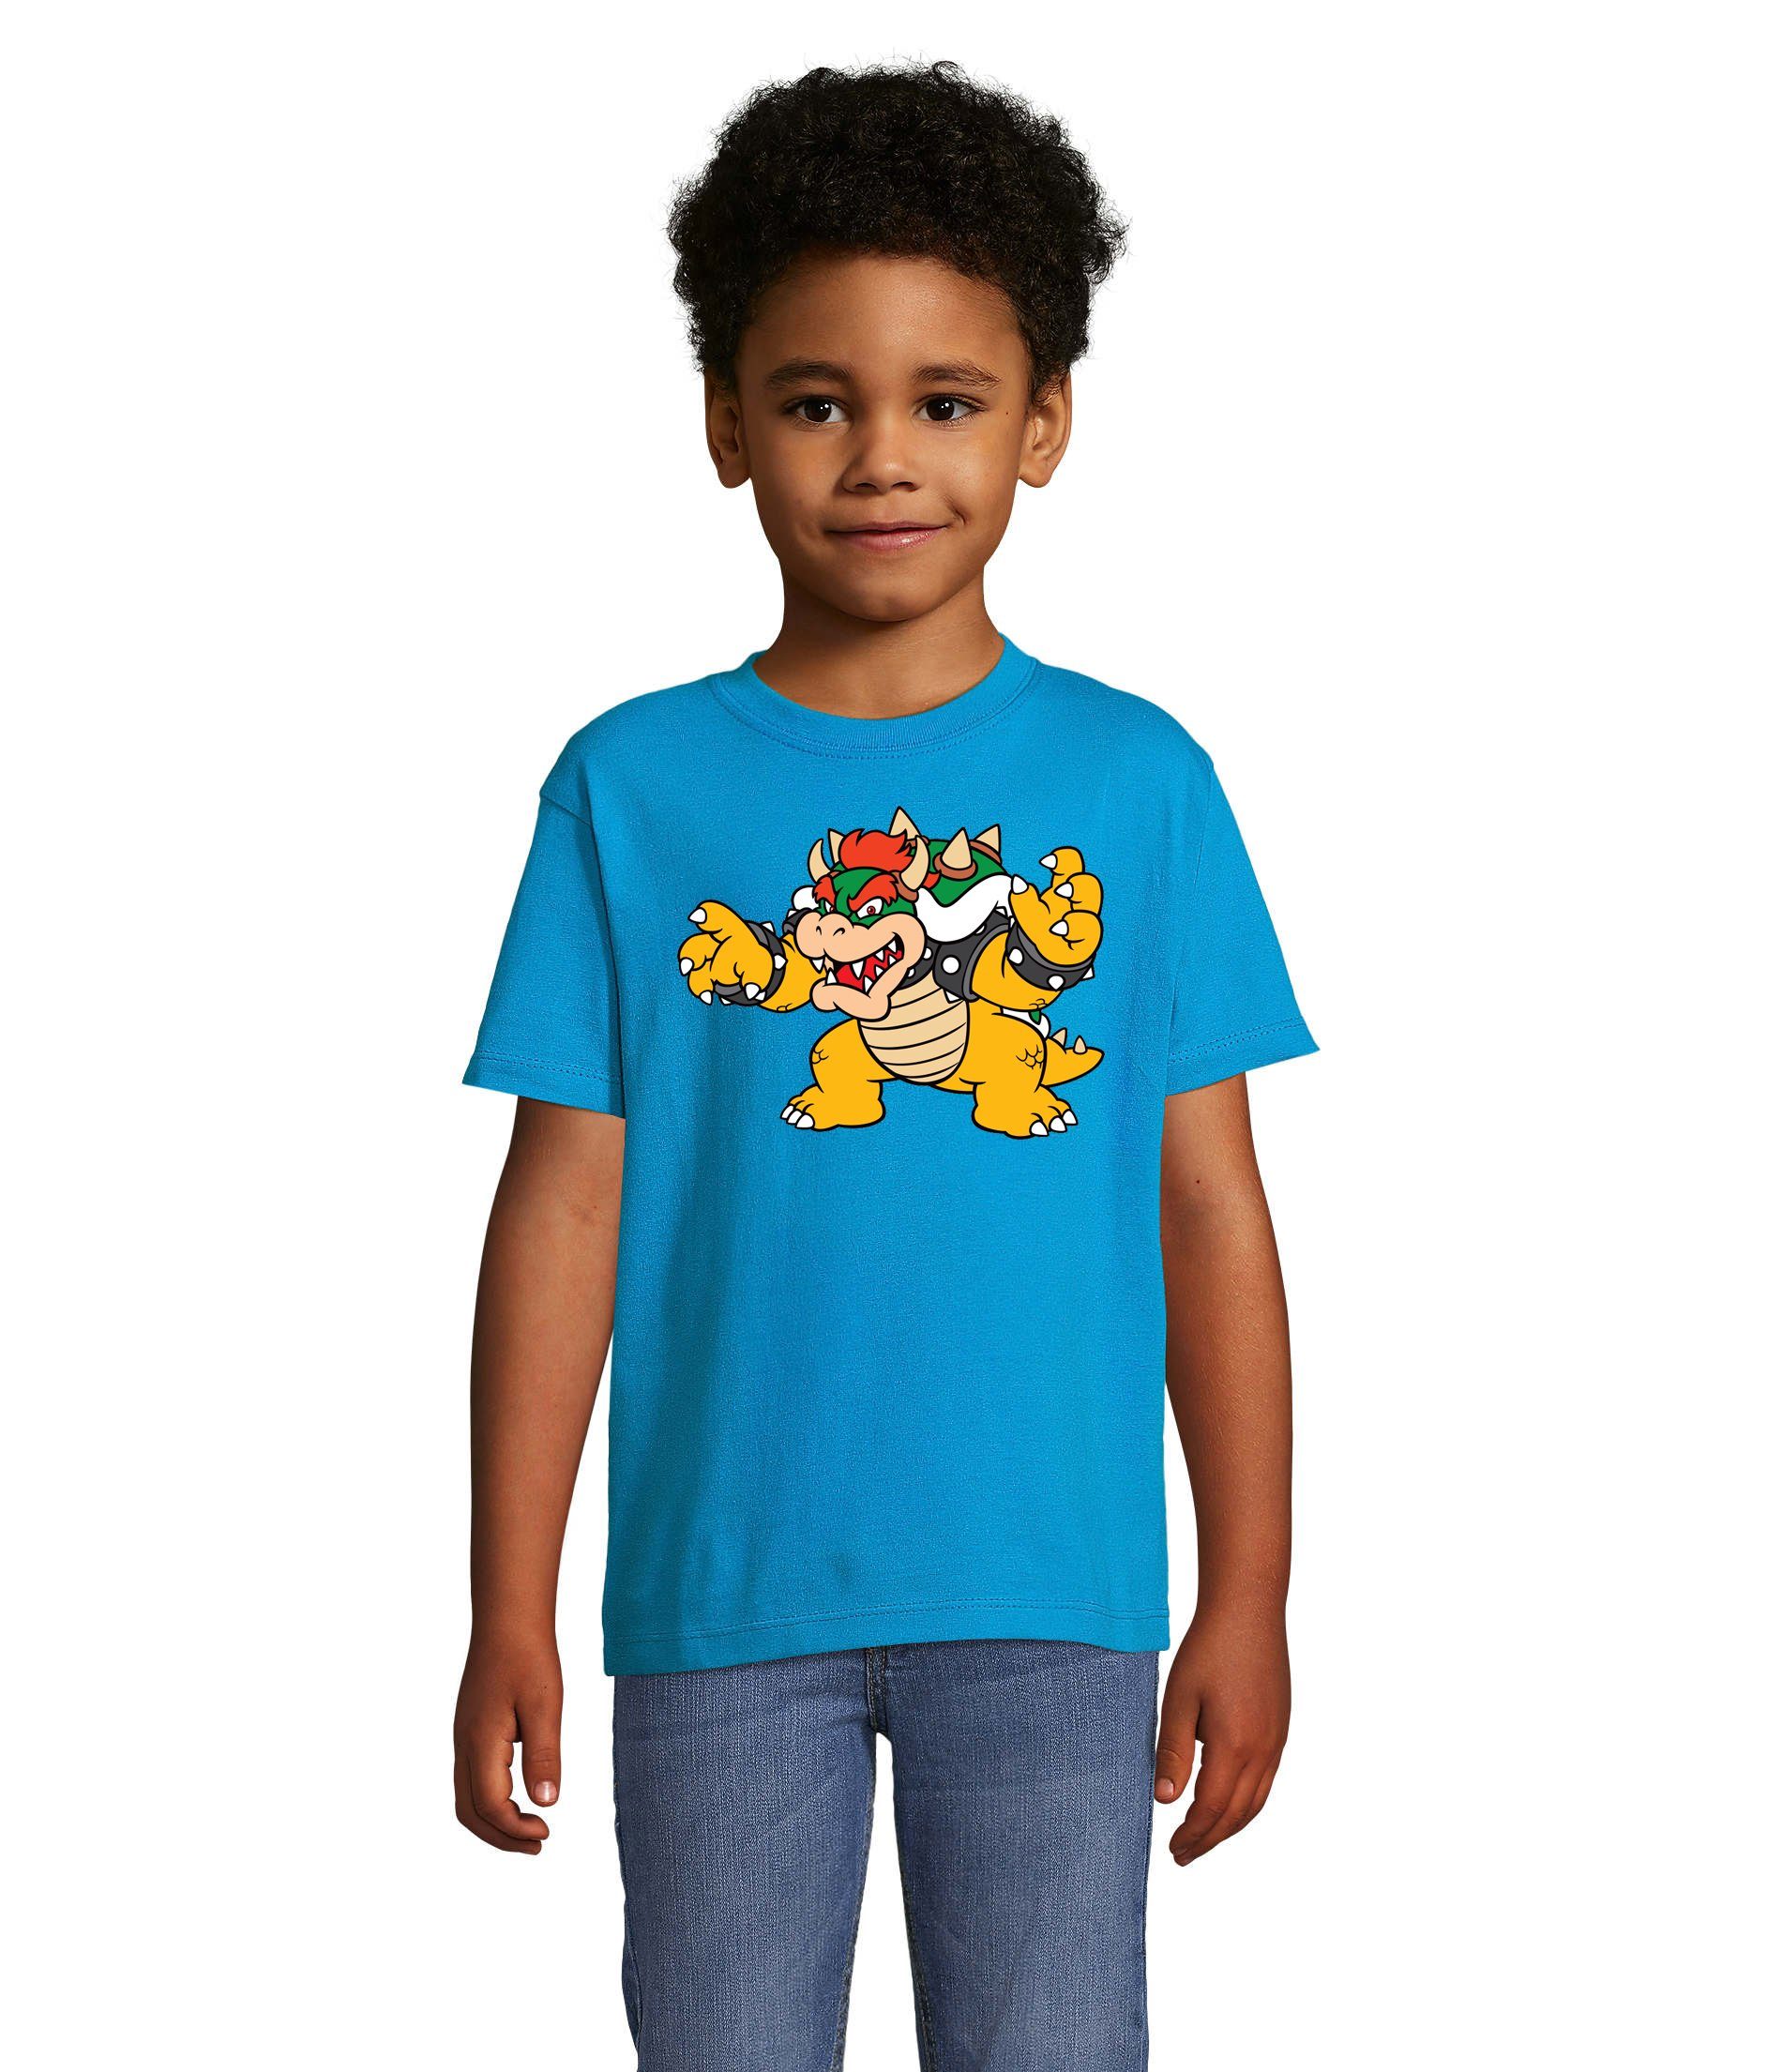 Blondie & Brownie T-Shirt Kinder Bowser Nintendo Mario Yoshi Luigi Game Gamer Konsole Blau | T-Shirts